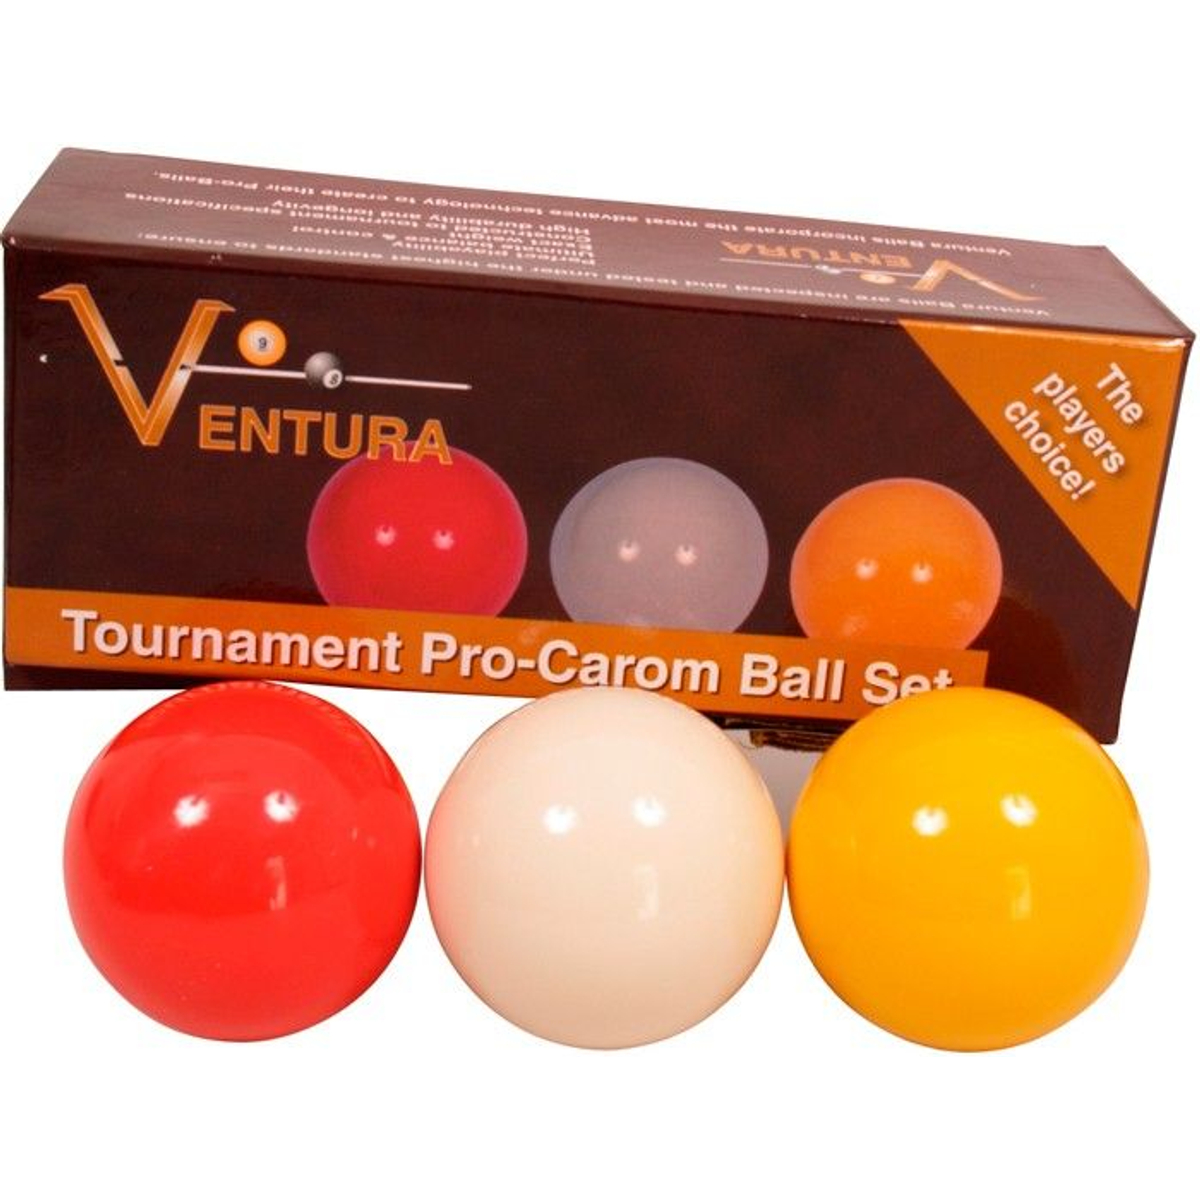 Carambole ballen set Ventura Tournament